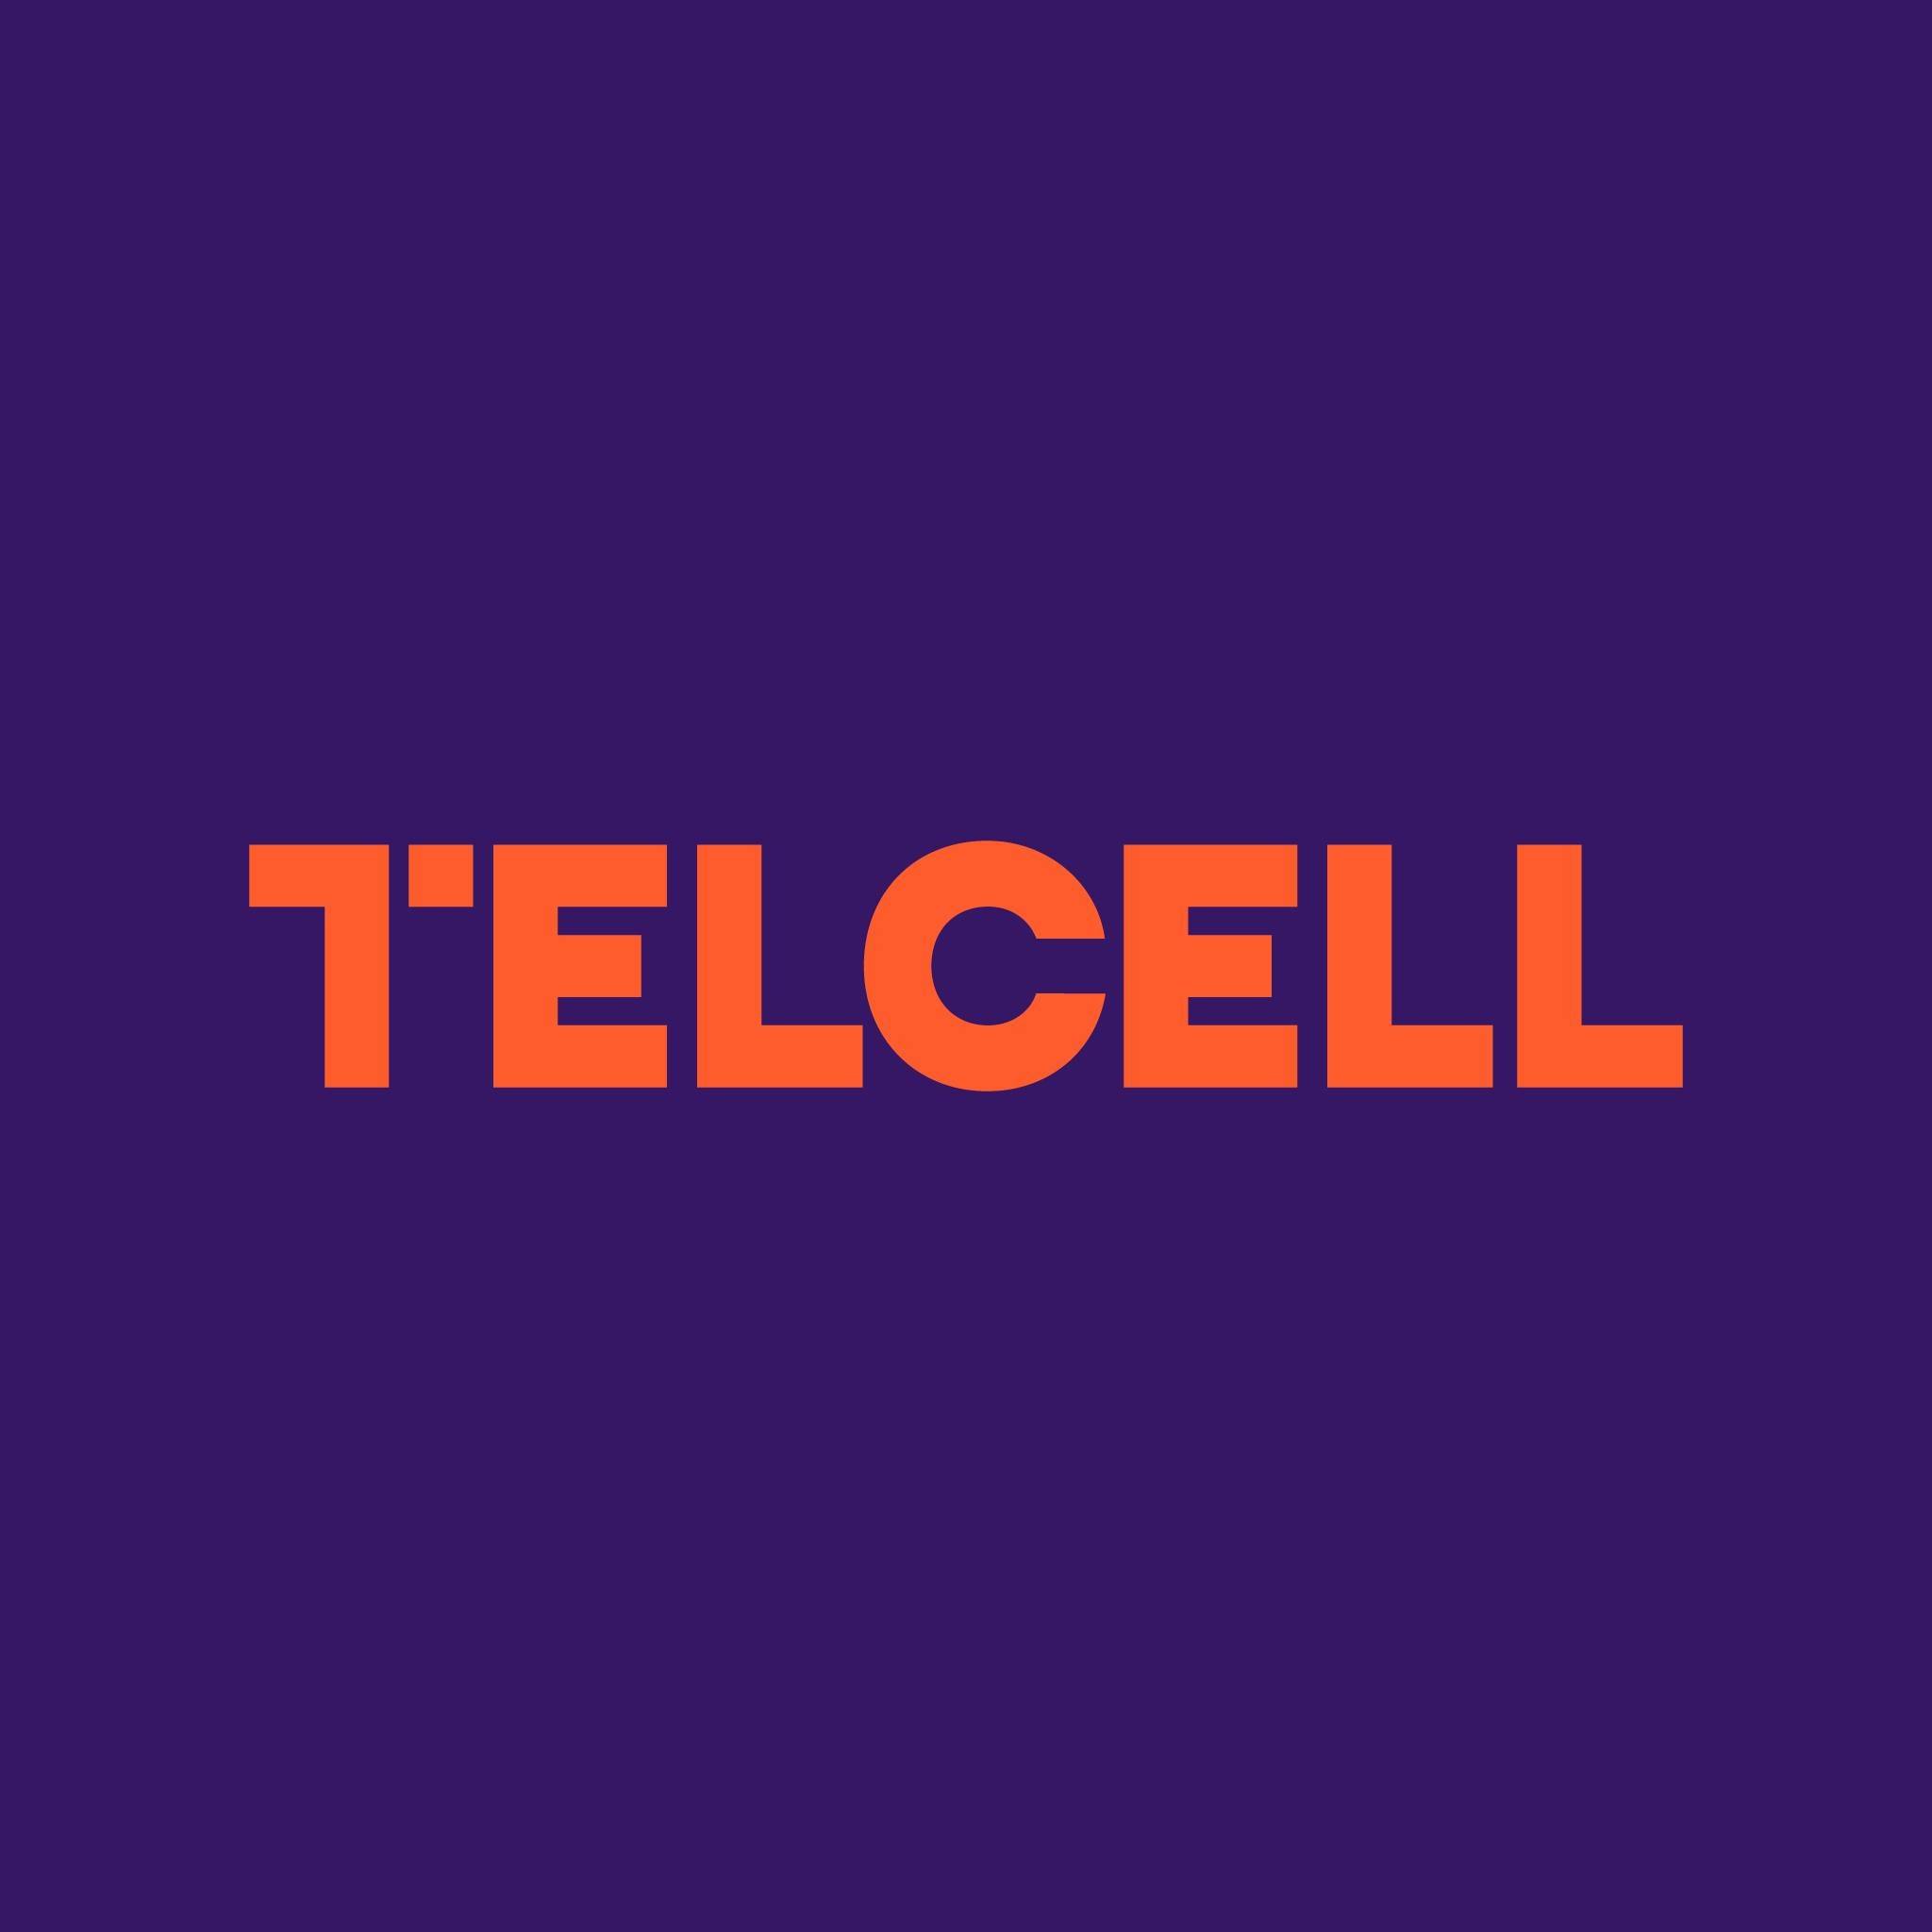 Telcell-ը մարդիկ են, ովքեր ստեղծում են արժեքներ: